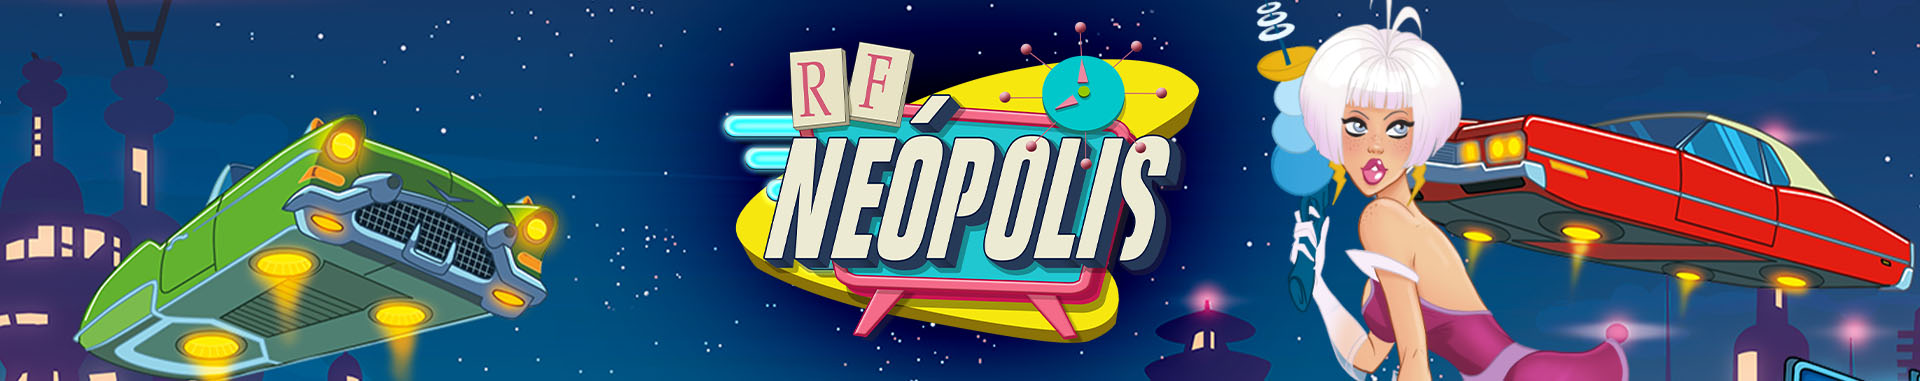 Slot online RF Neópolis